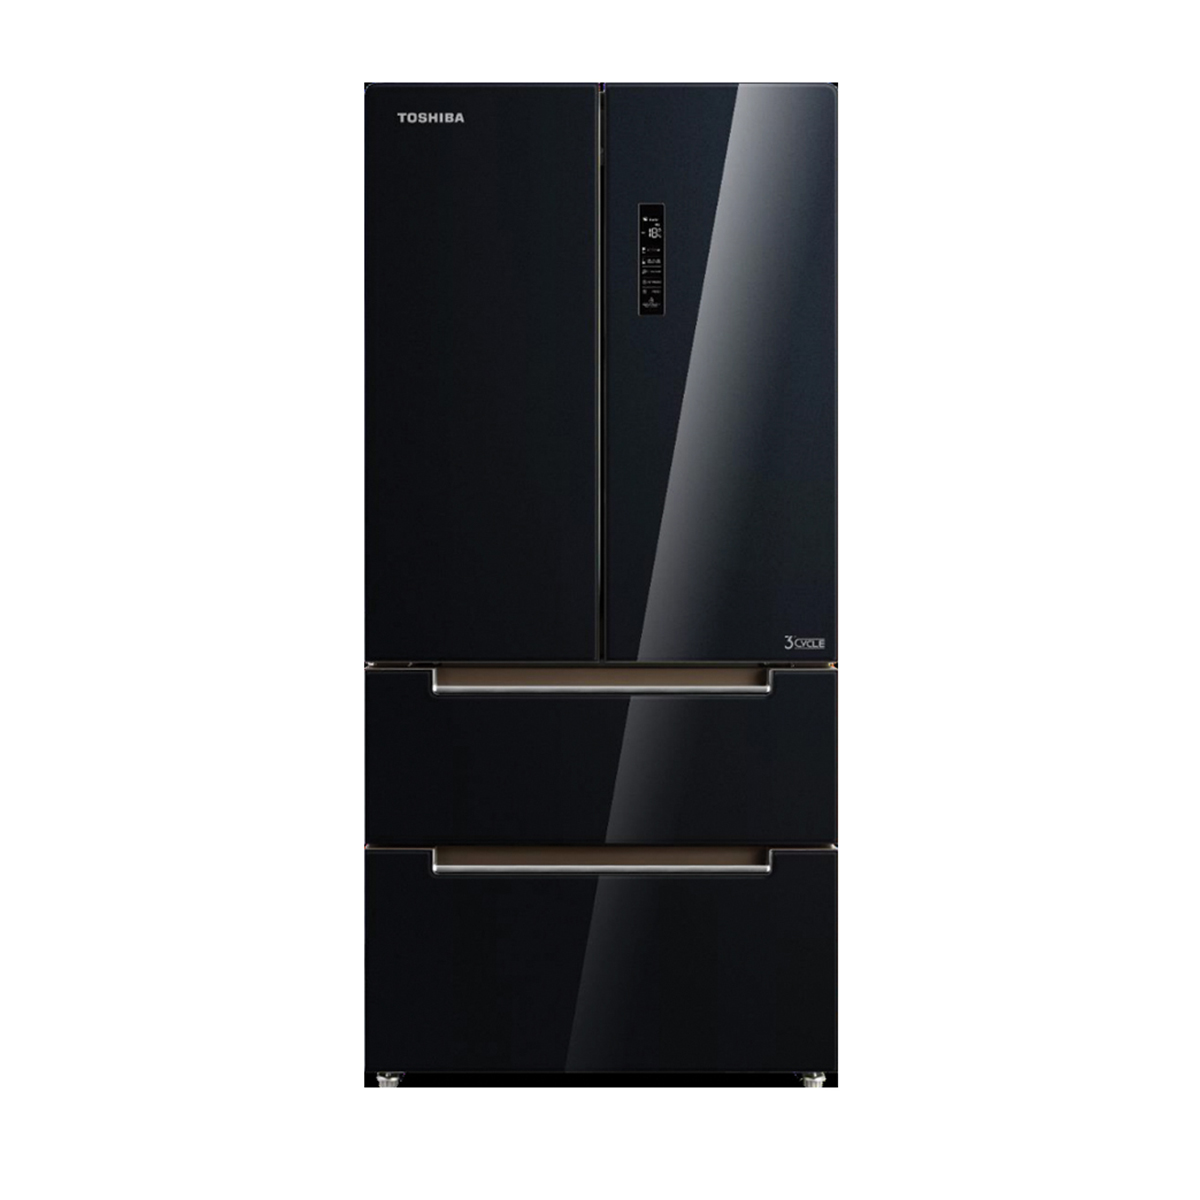 รวมตู้เย็น 5 รุ่นคุณภาพ ดีไซน์สวนจากแบรนด์ Toshiba  ที่น่าใช้งานแห่งปี 2022 ! 5